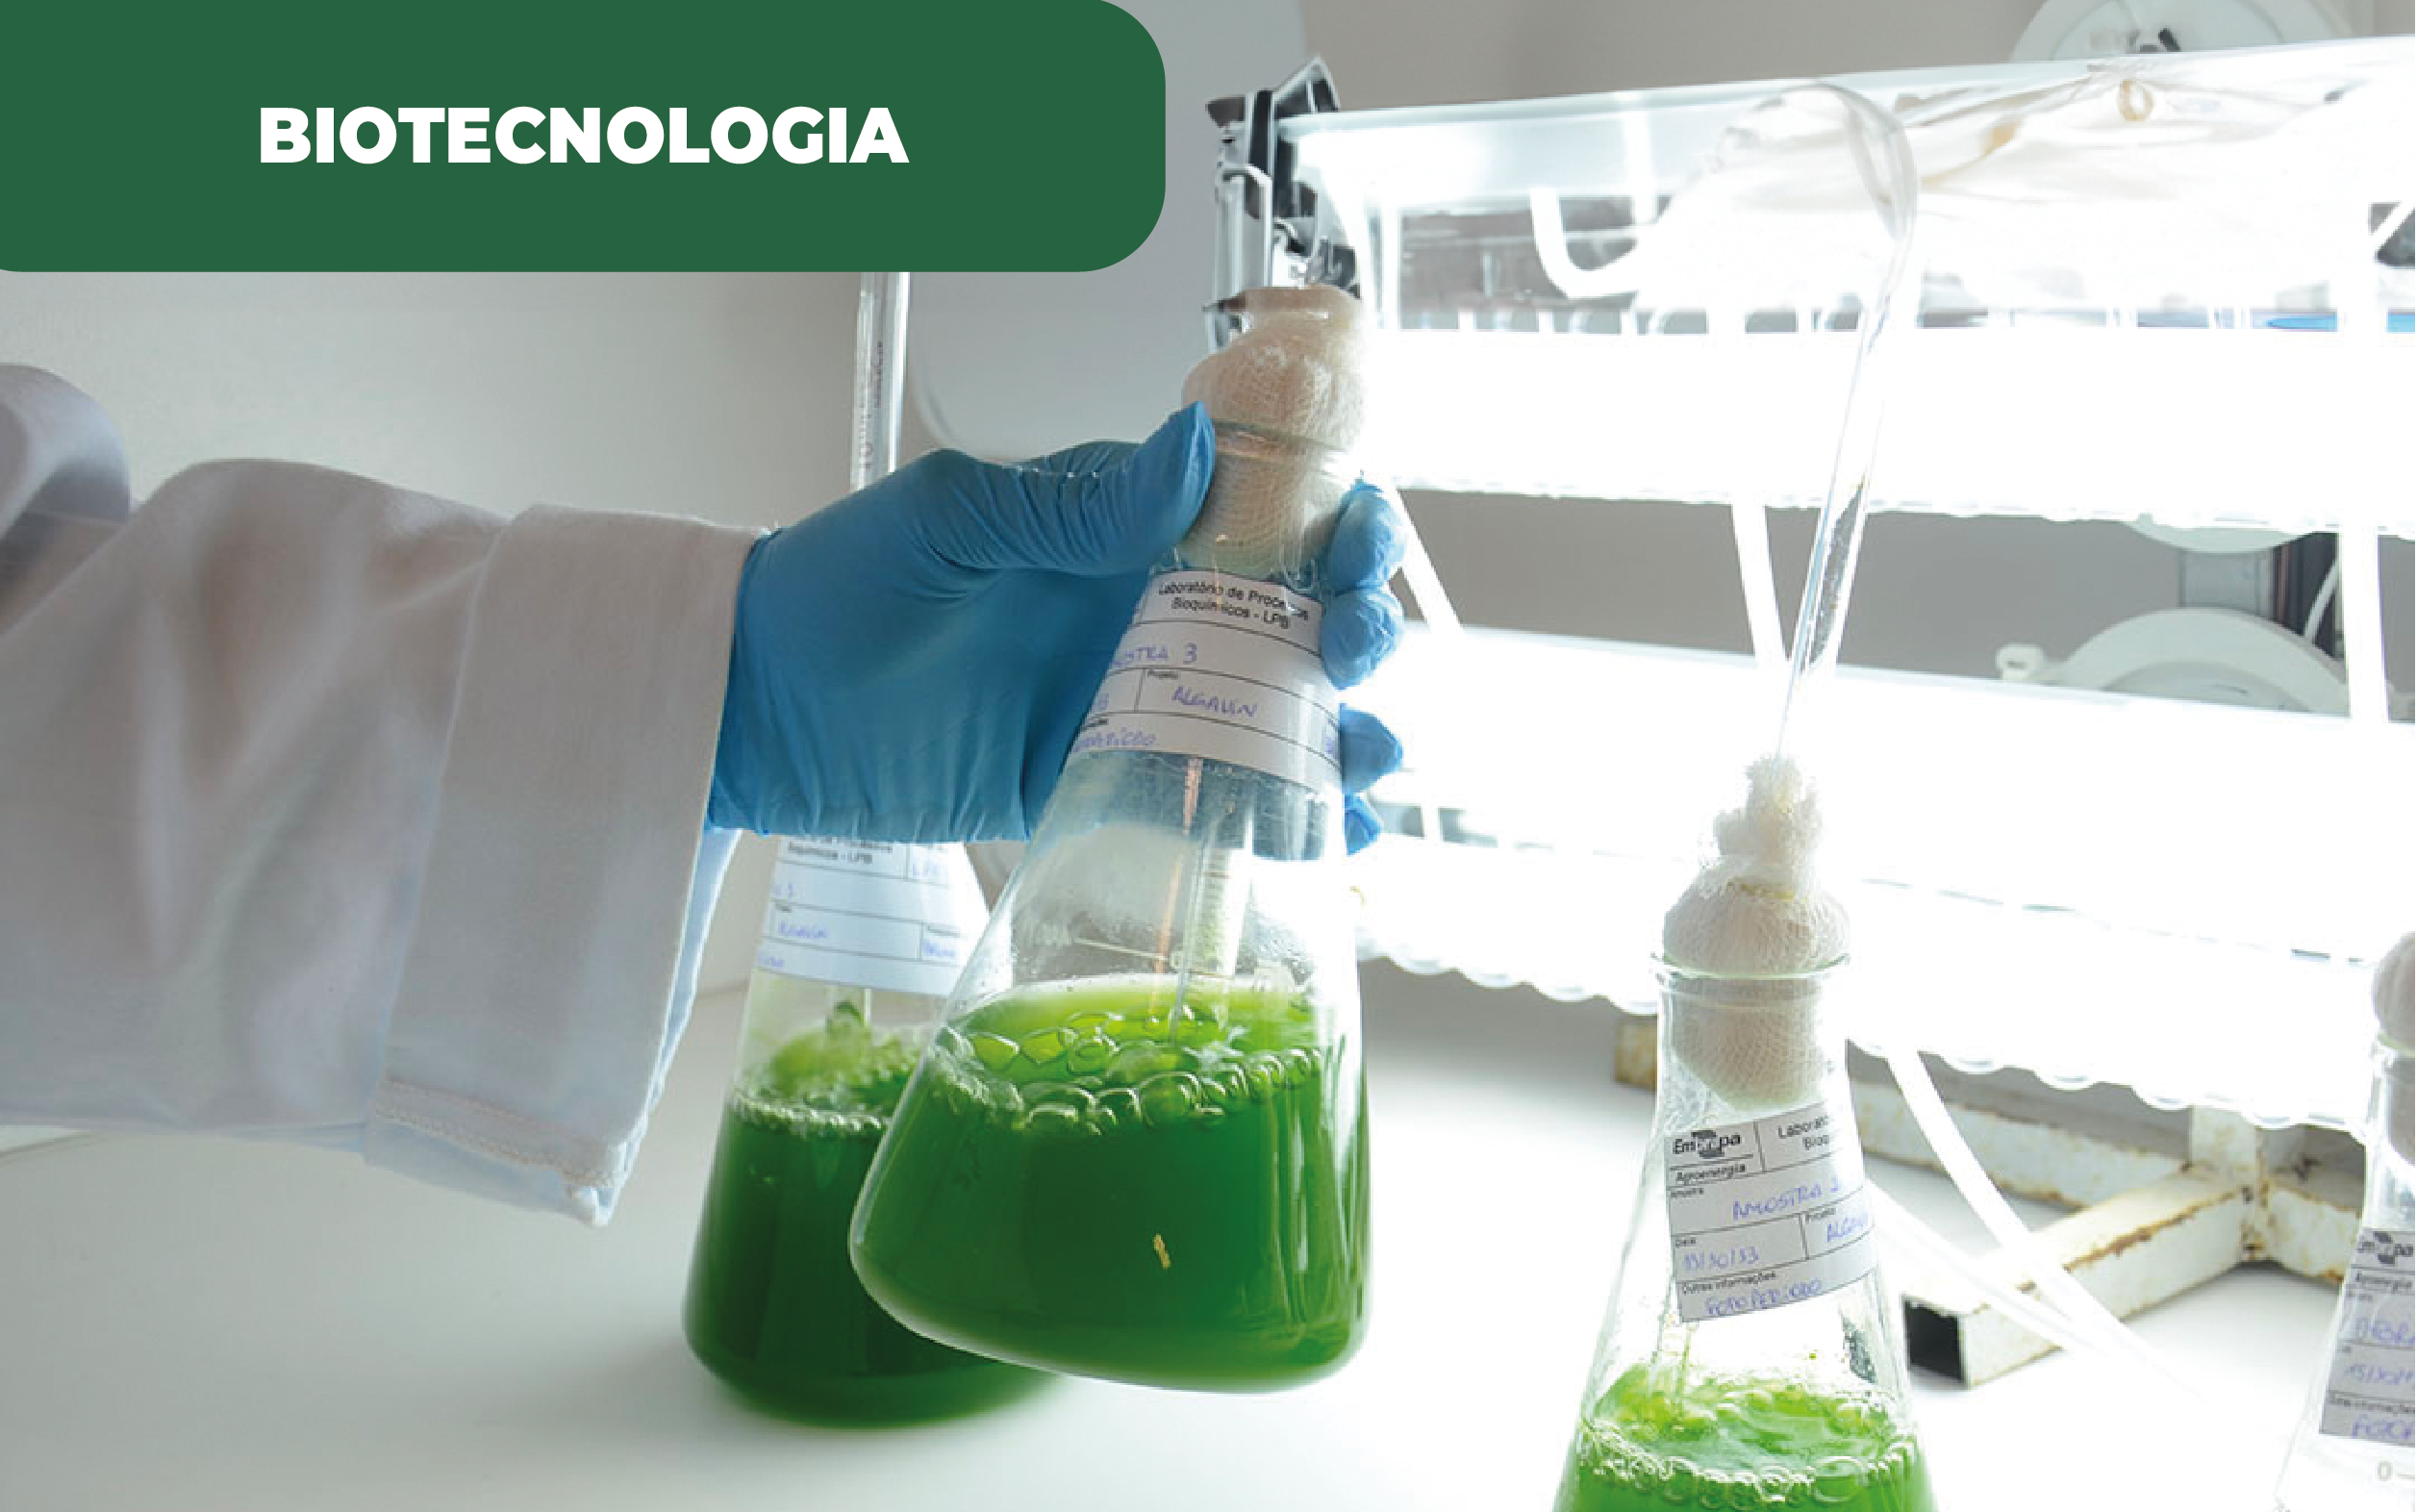 Imagem ilustrativa de laboratório, com tubo de Erlenmeyer com líquido verde para análise de microalgas. Coimbra estuda microalgas para captura de energia.